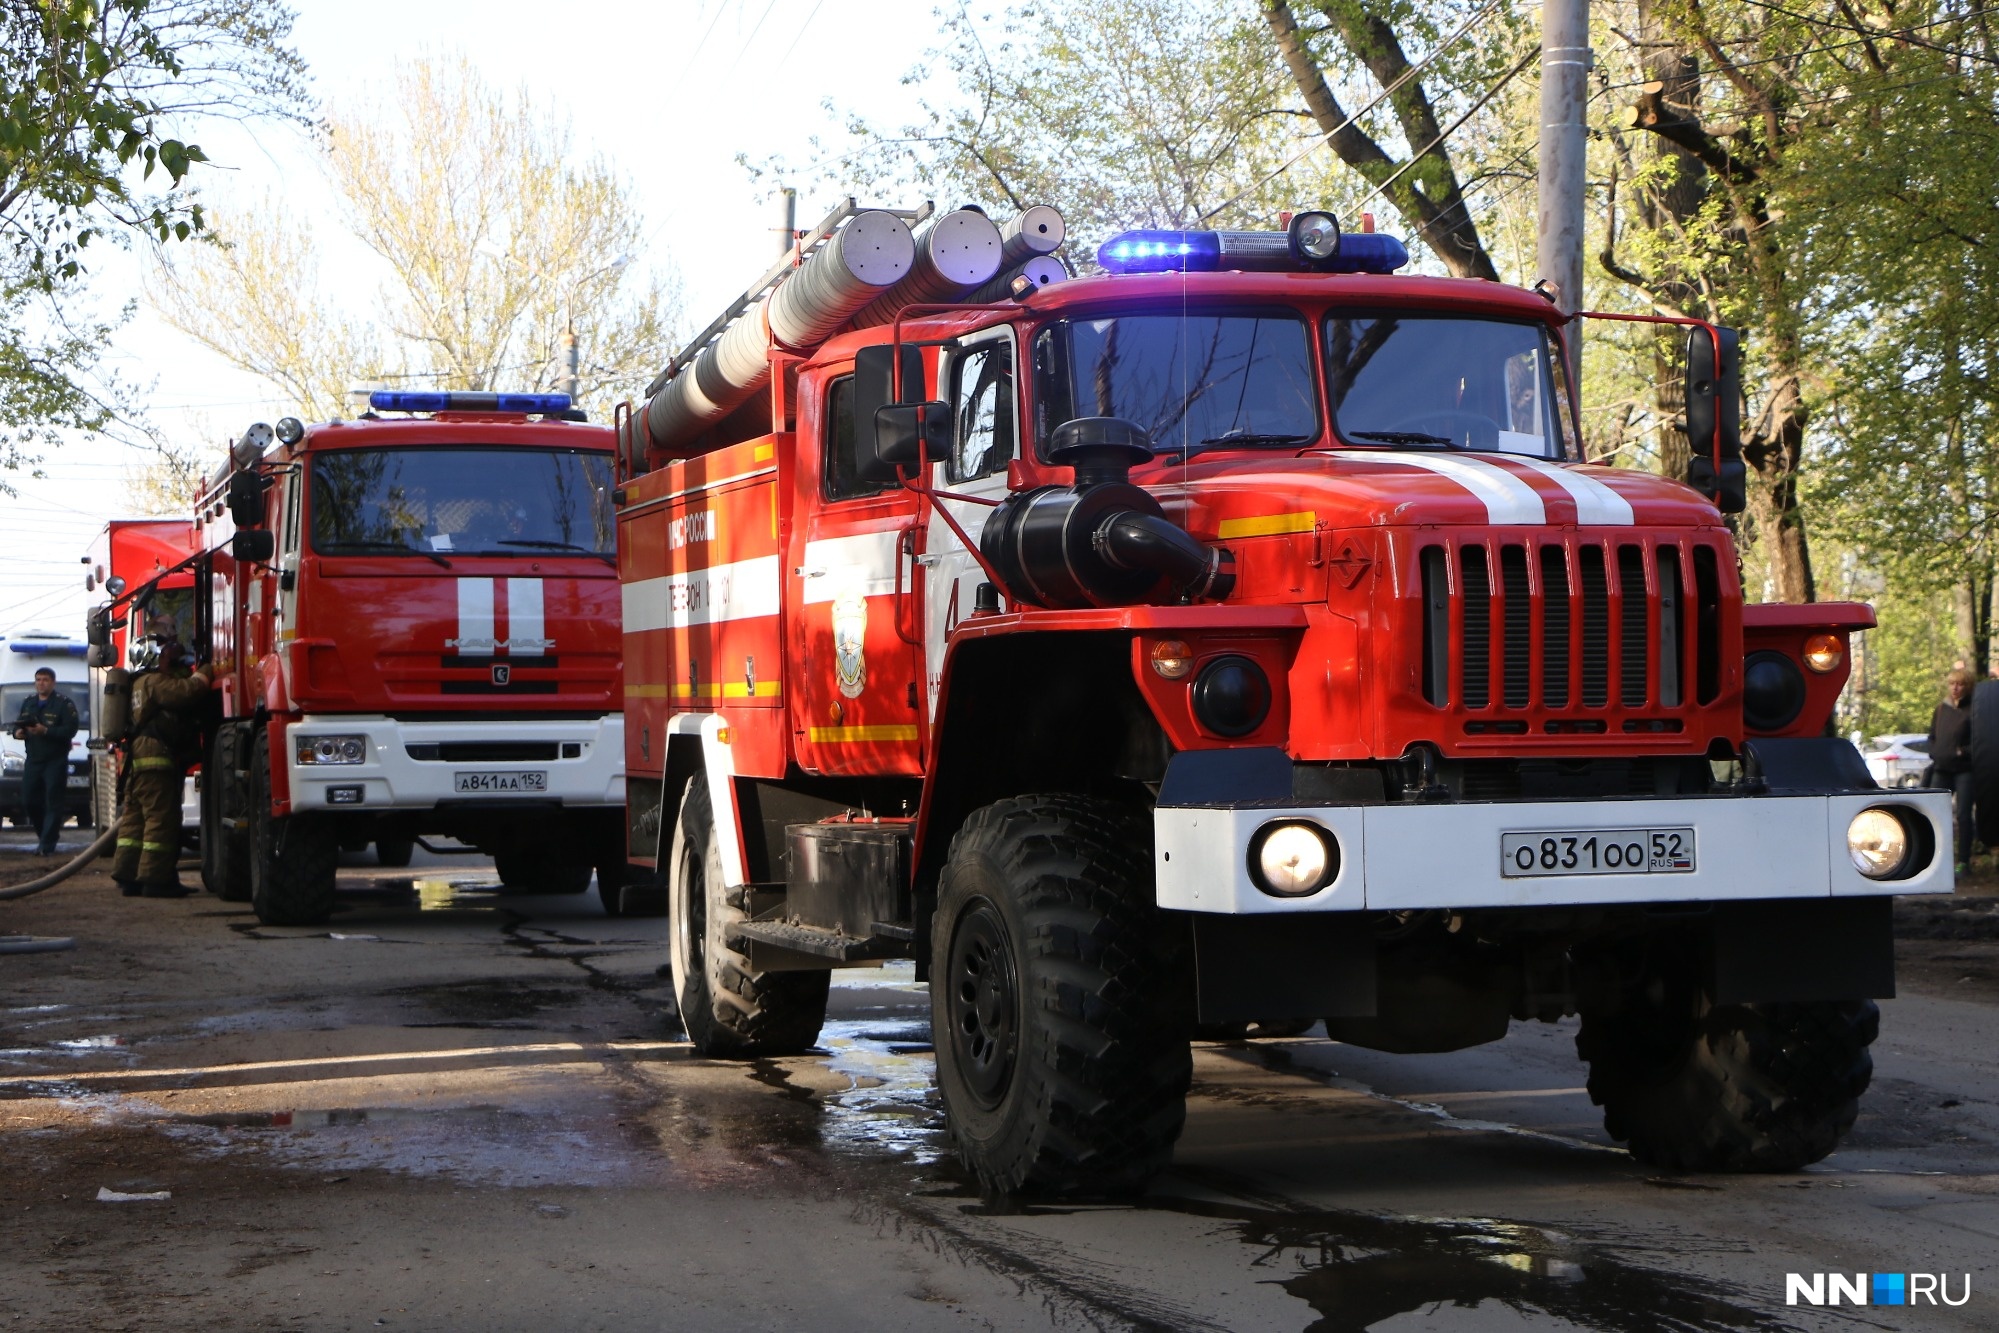 Женщина погибла на пожаре в Нижнем Новгороде.  Остальных жильцов дома эвакуировали